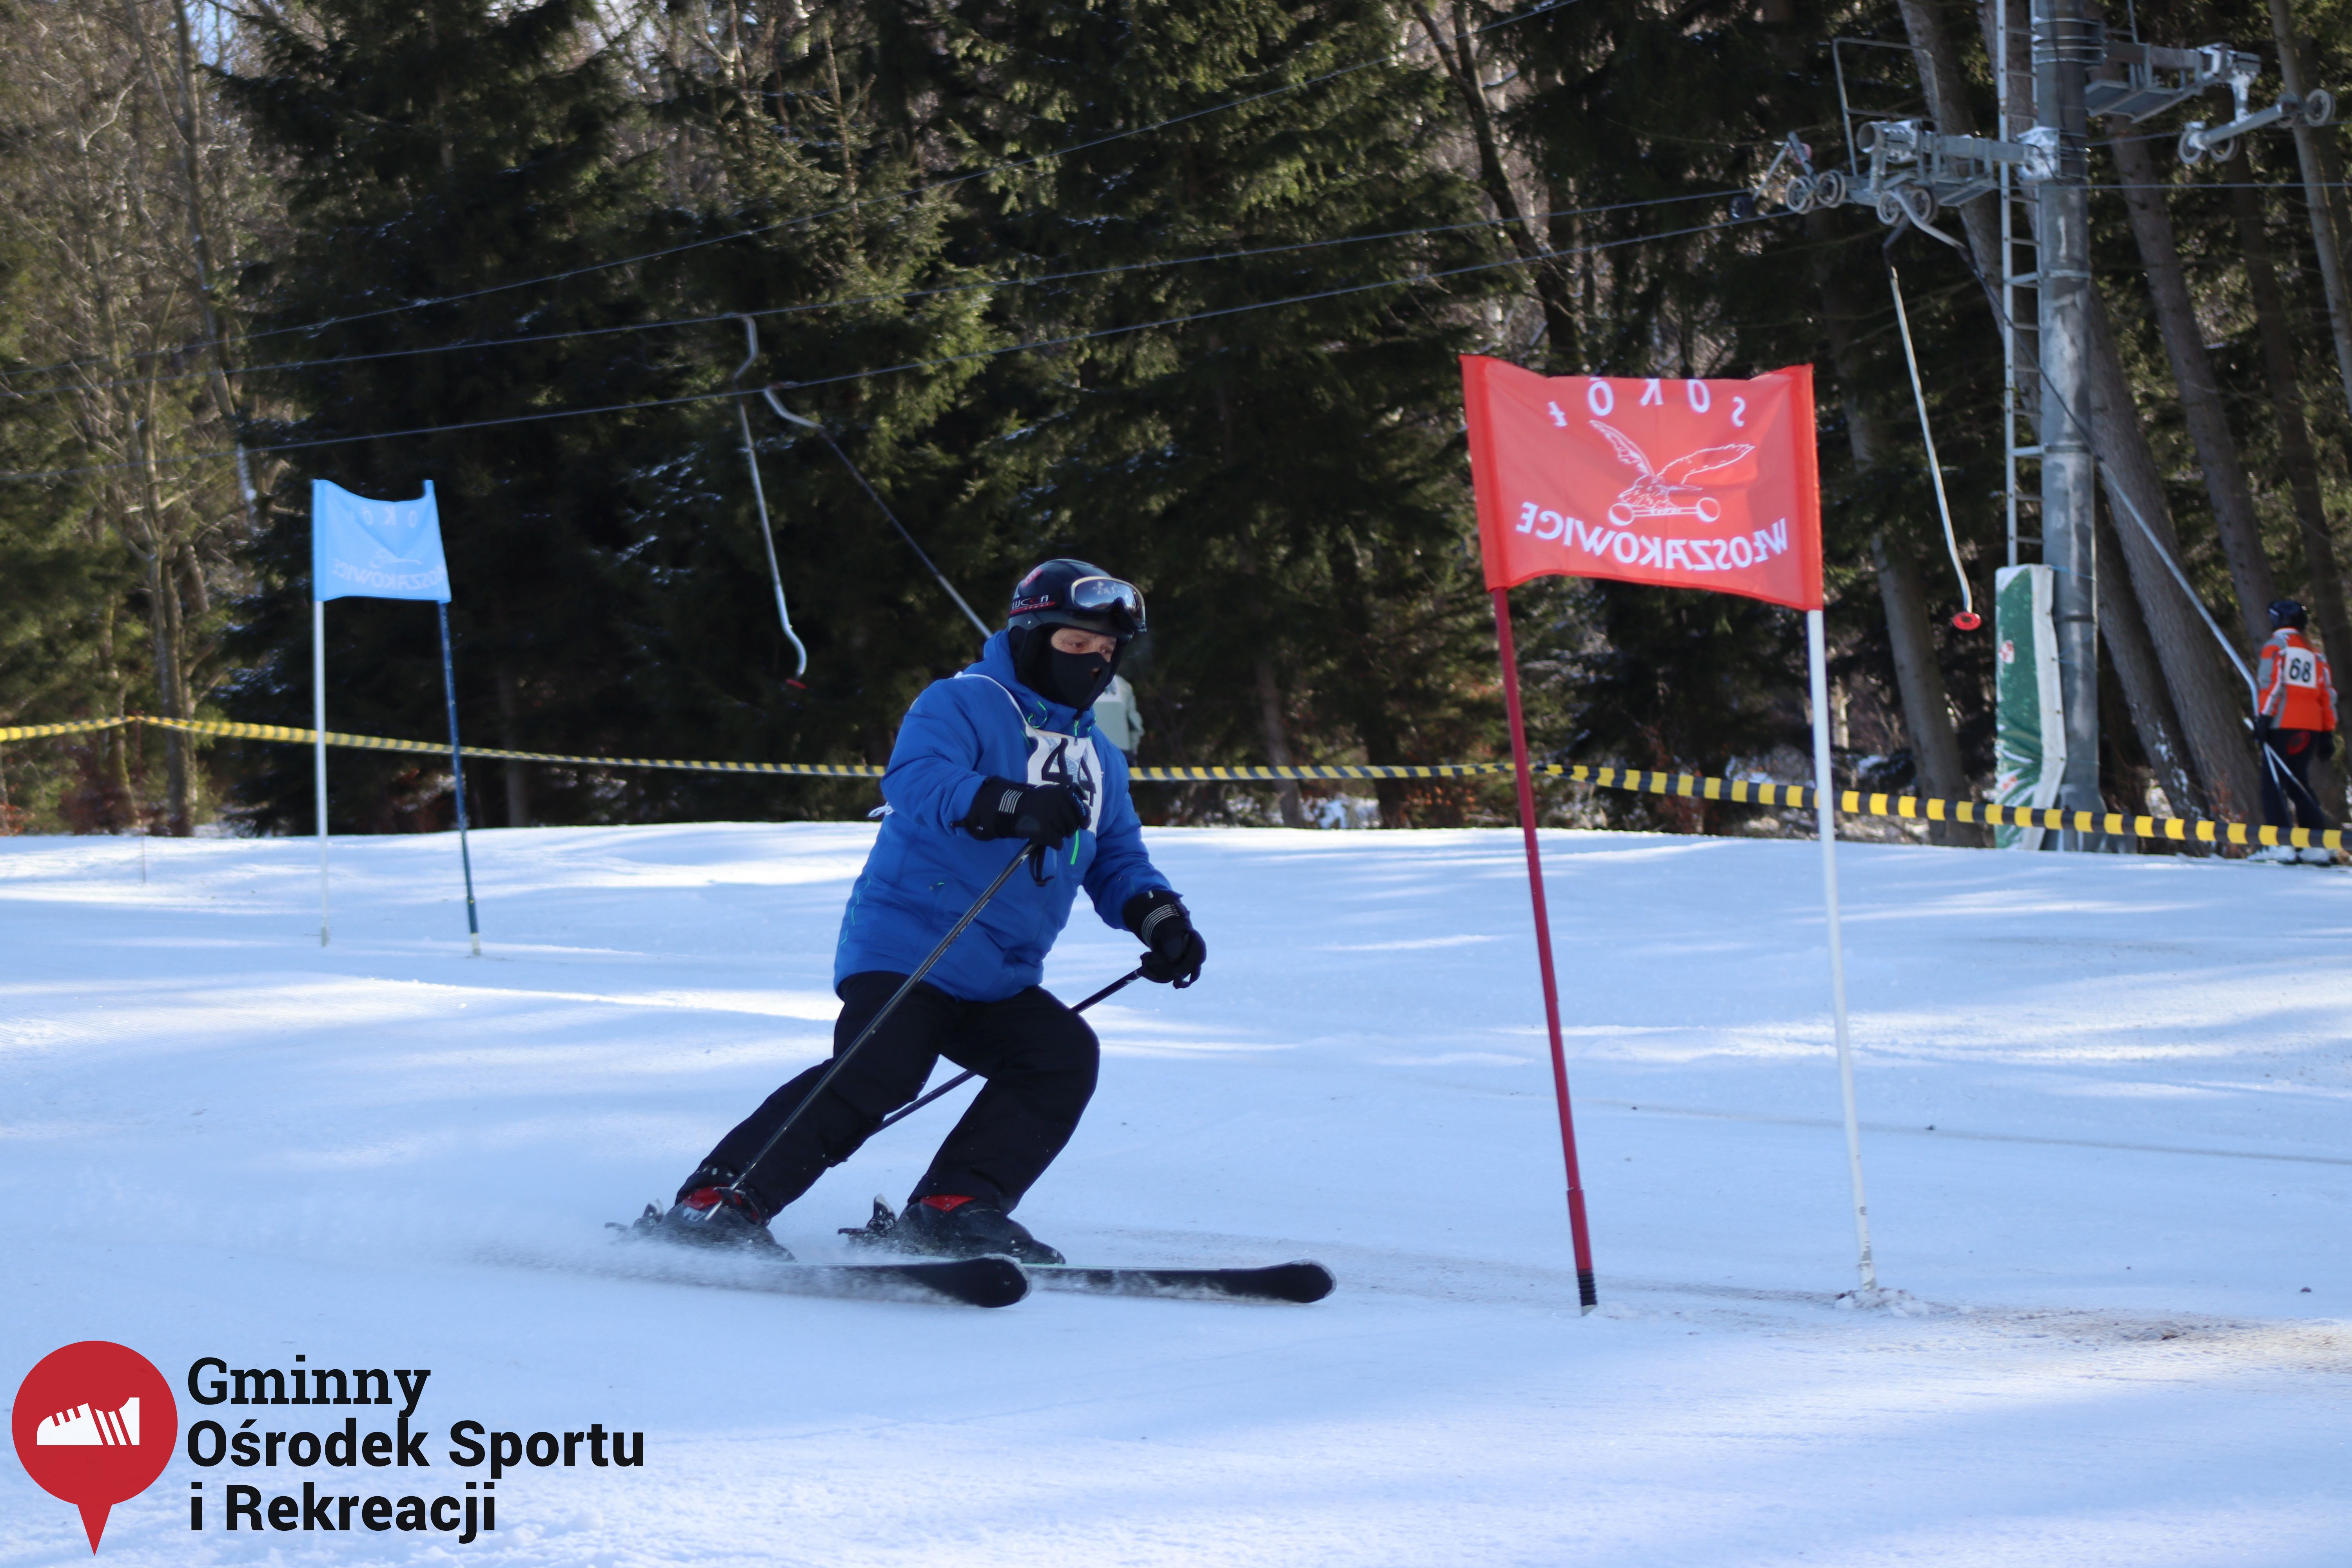 2022.02.12 - 18. Mistrzostwa Gminy Woszakowice w narciarstwie044.jpg - 1,67 MB